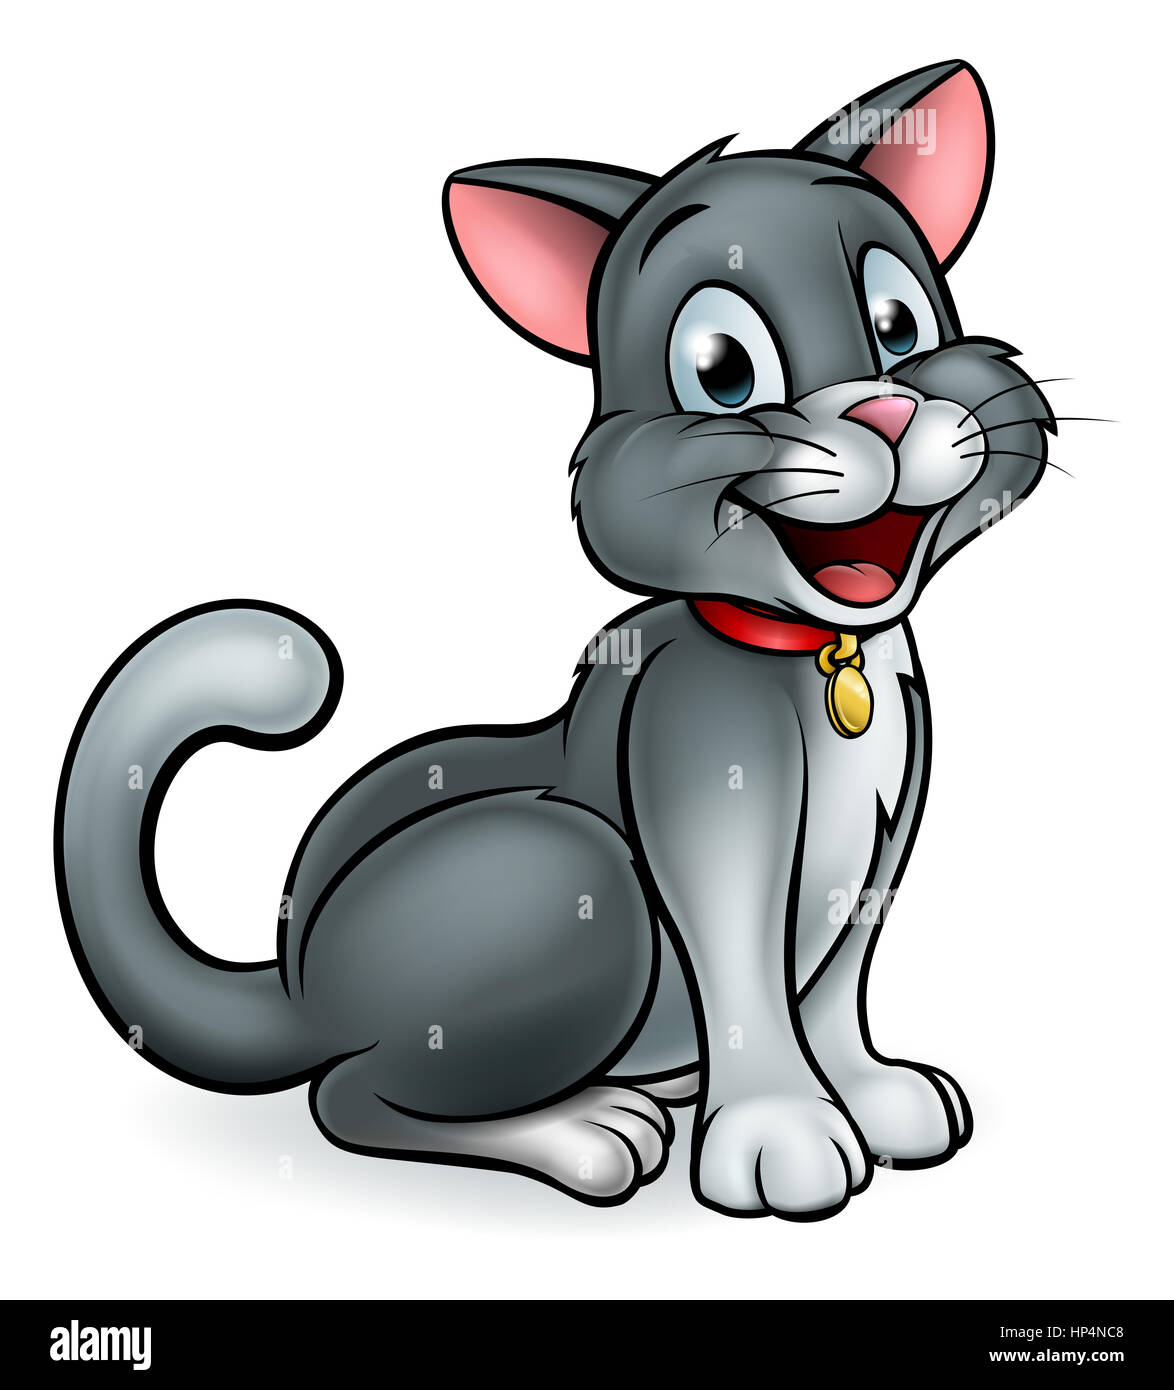 Un sympathique personnage mascotte chat cartoon Photo Stock - Alamy